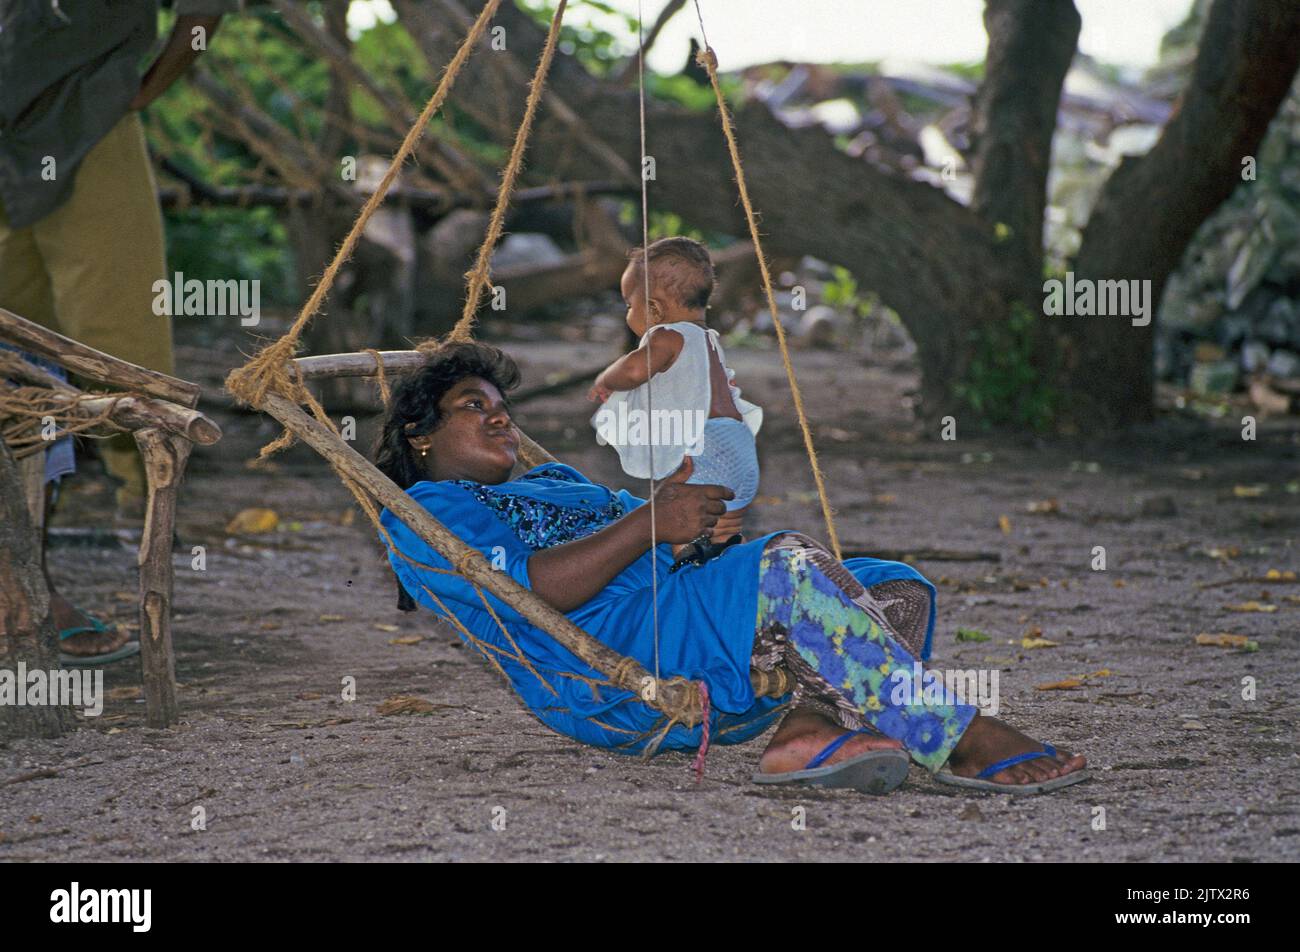 Maledivische Frau mit ihrem Baby auf einer Schaukel, Einheimischen-Insel Mahembadhoo, Malediven, Indischer Ozean, Asien | Maldivian woman with her bab Stock Photo